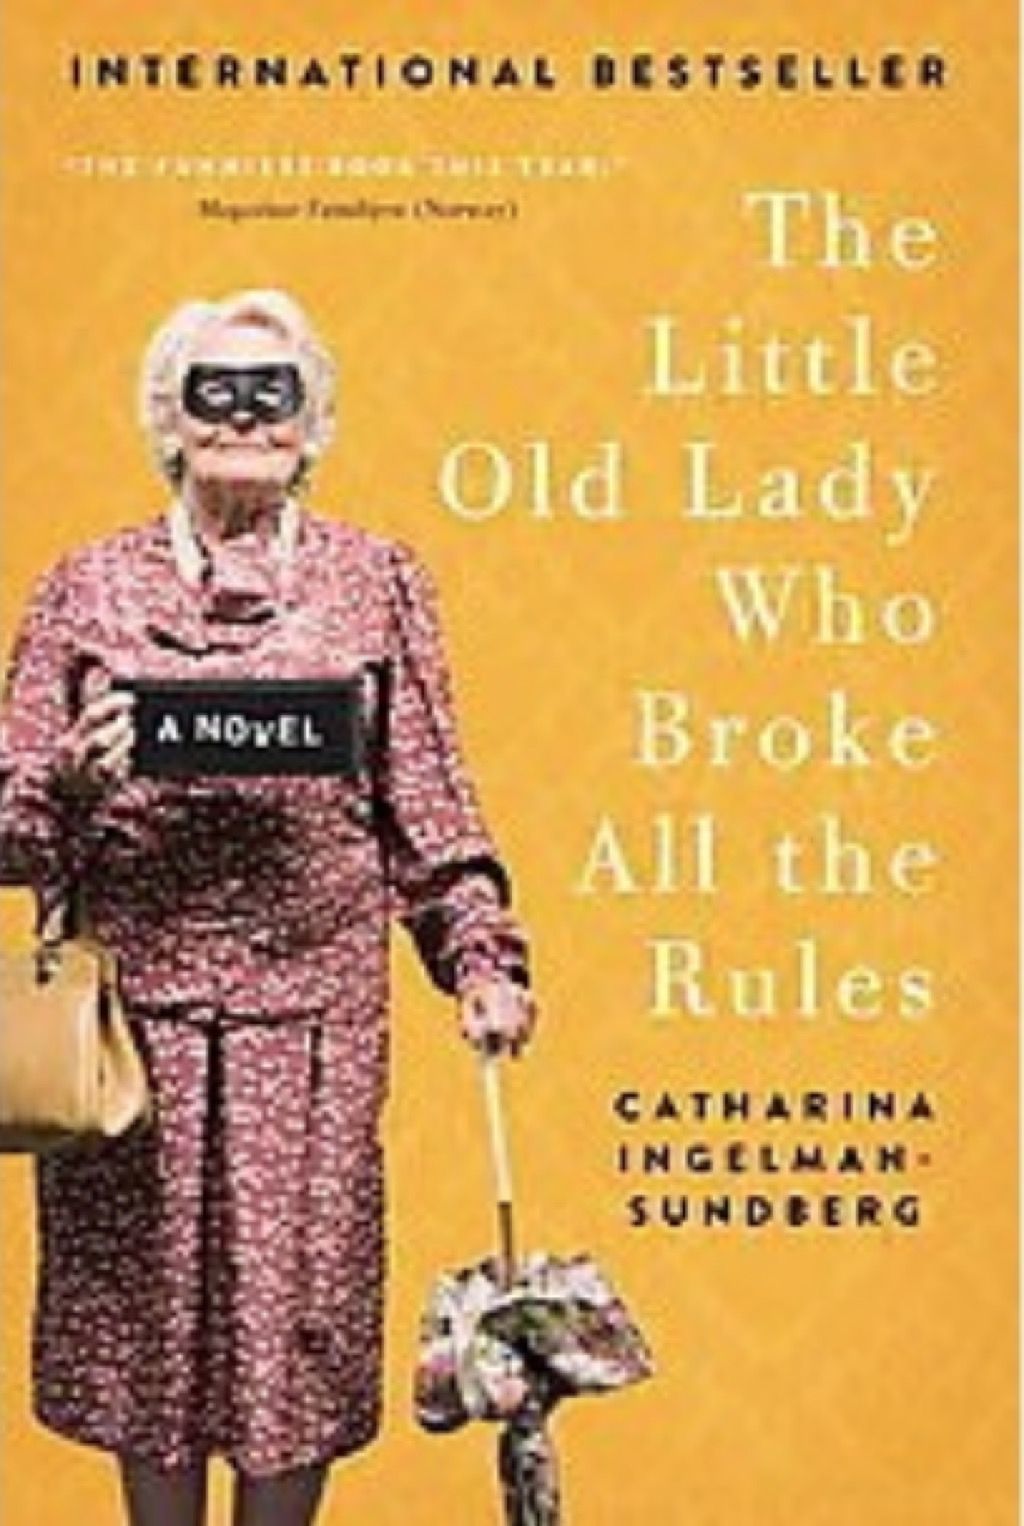 Väike vana daam, kes rikkus kõik reeglid, autor Catherina Ingelman-Sunderberg